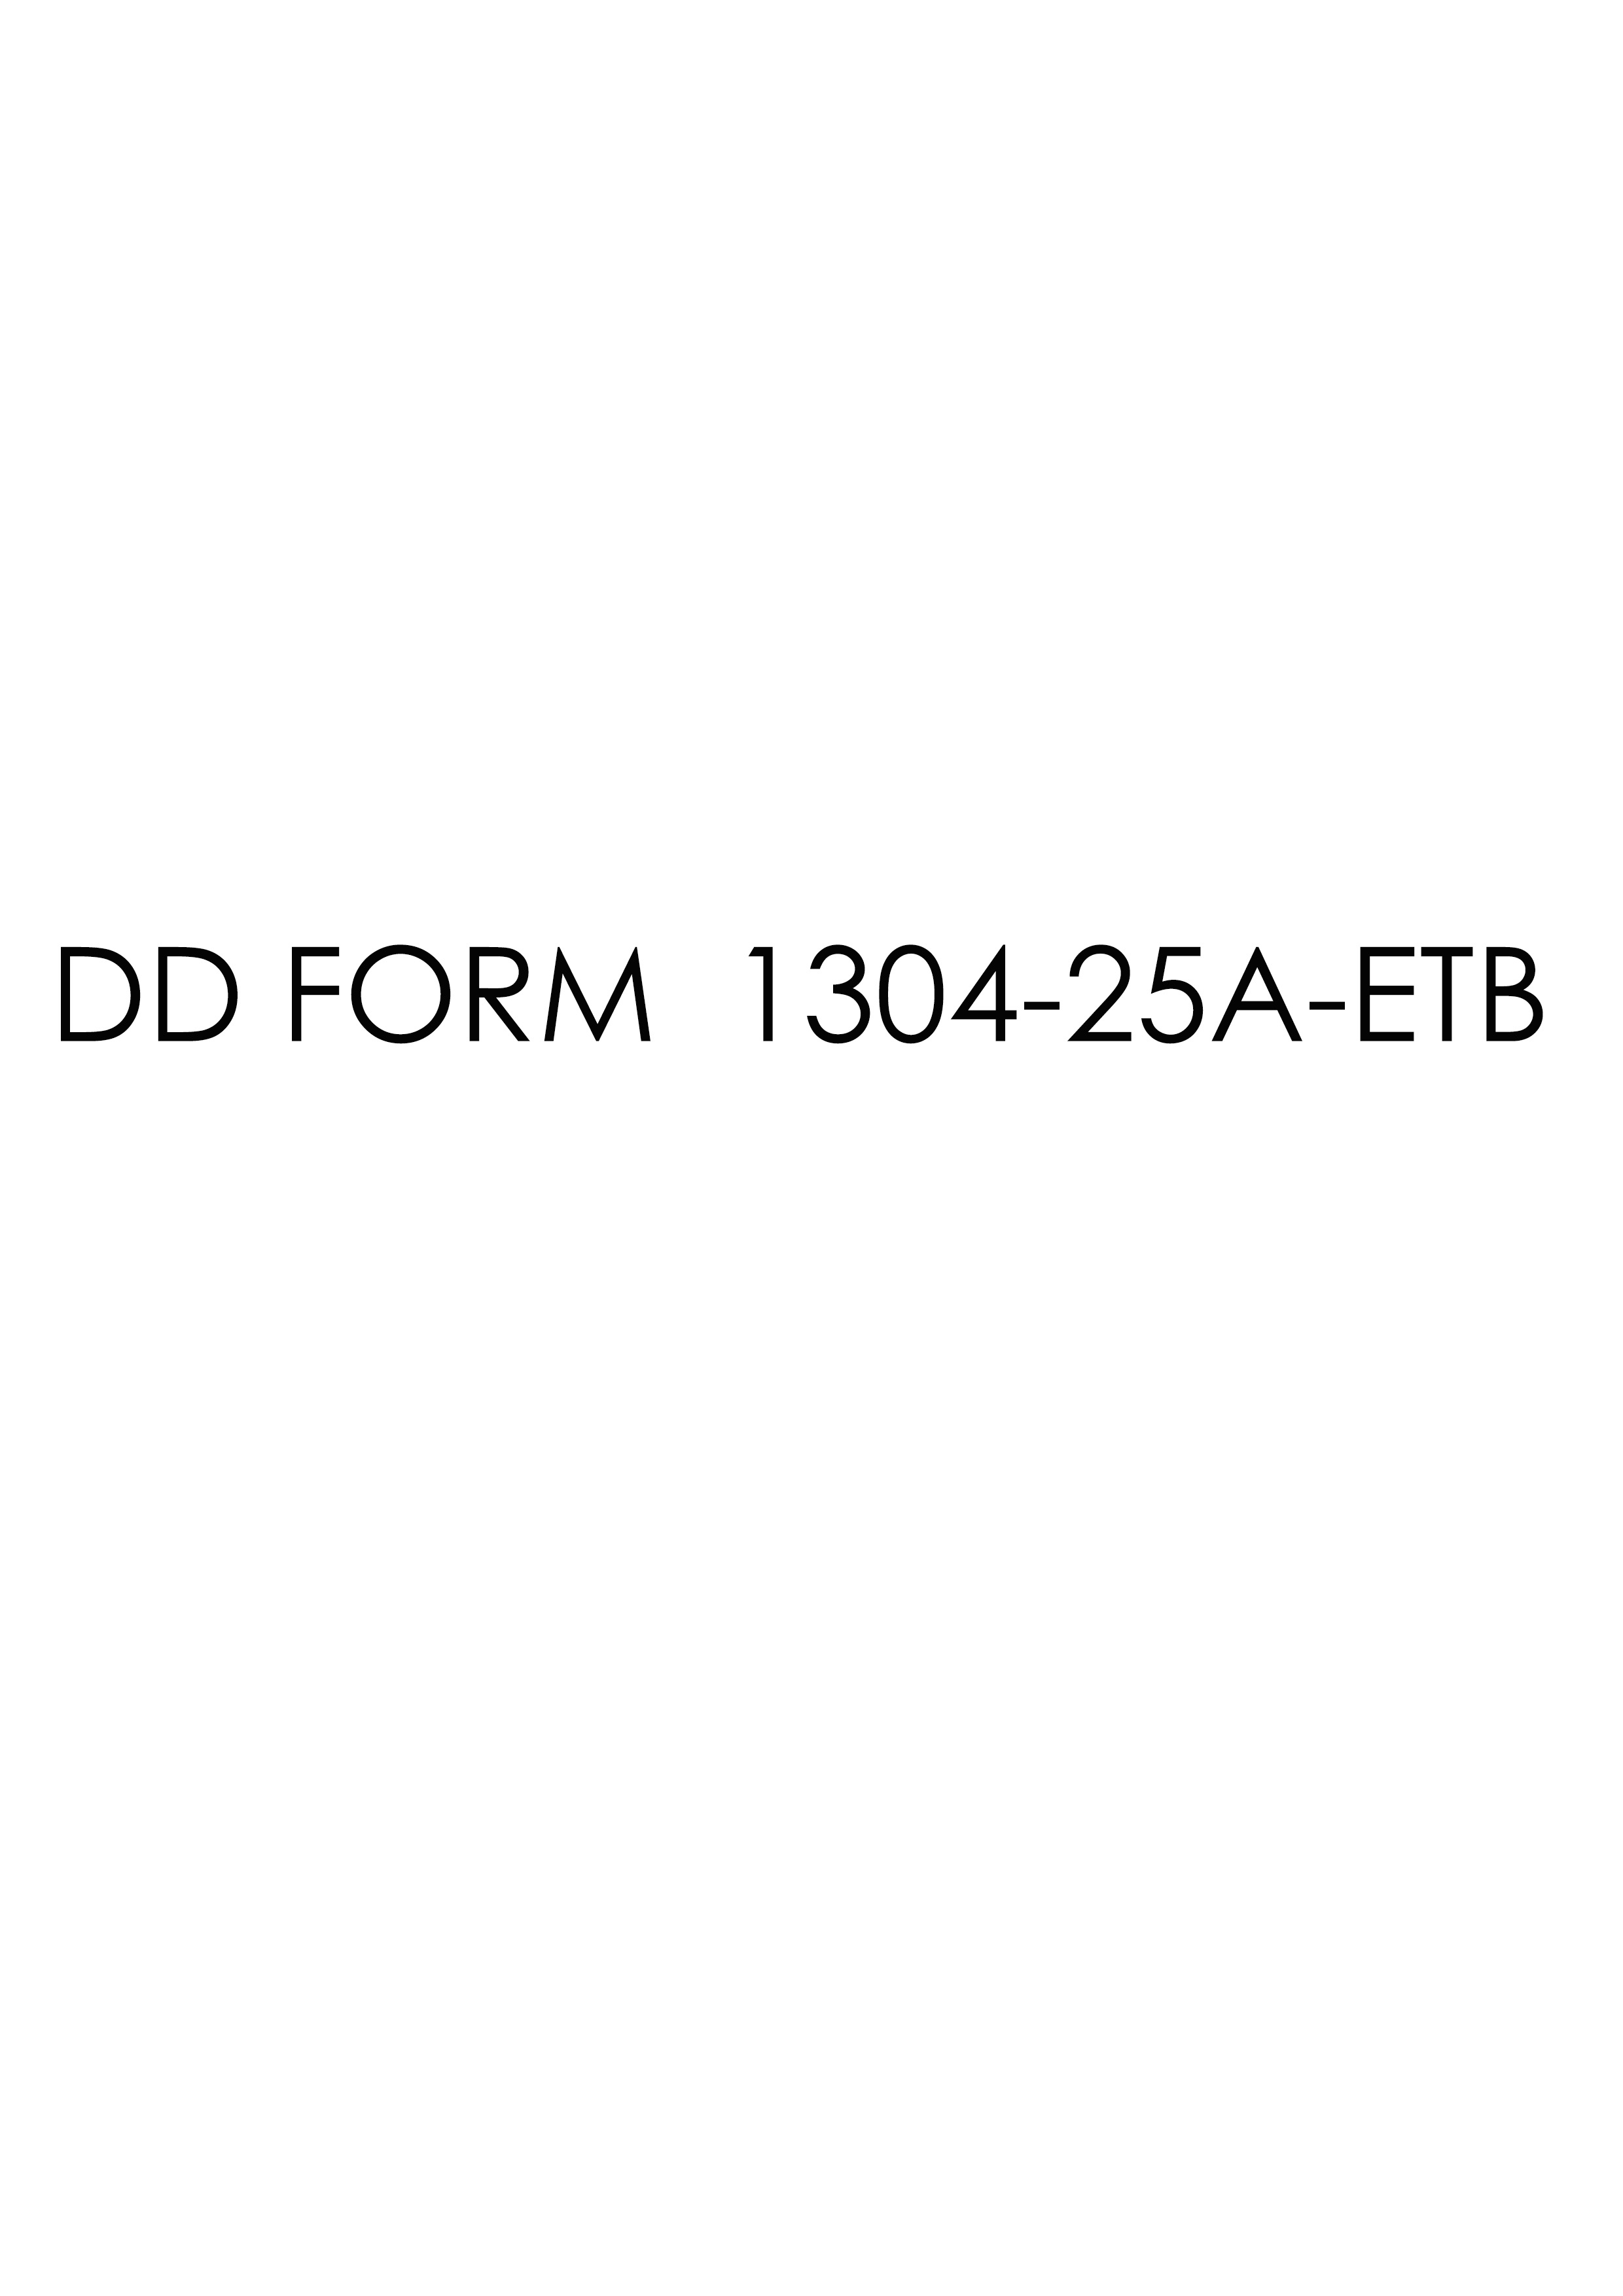 Download dd 1304-25A-ETB Form